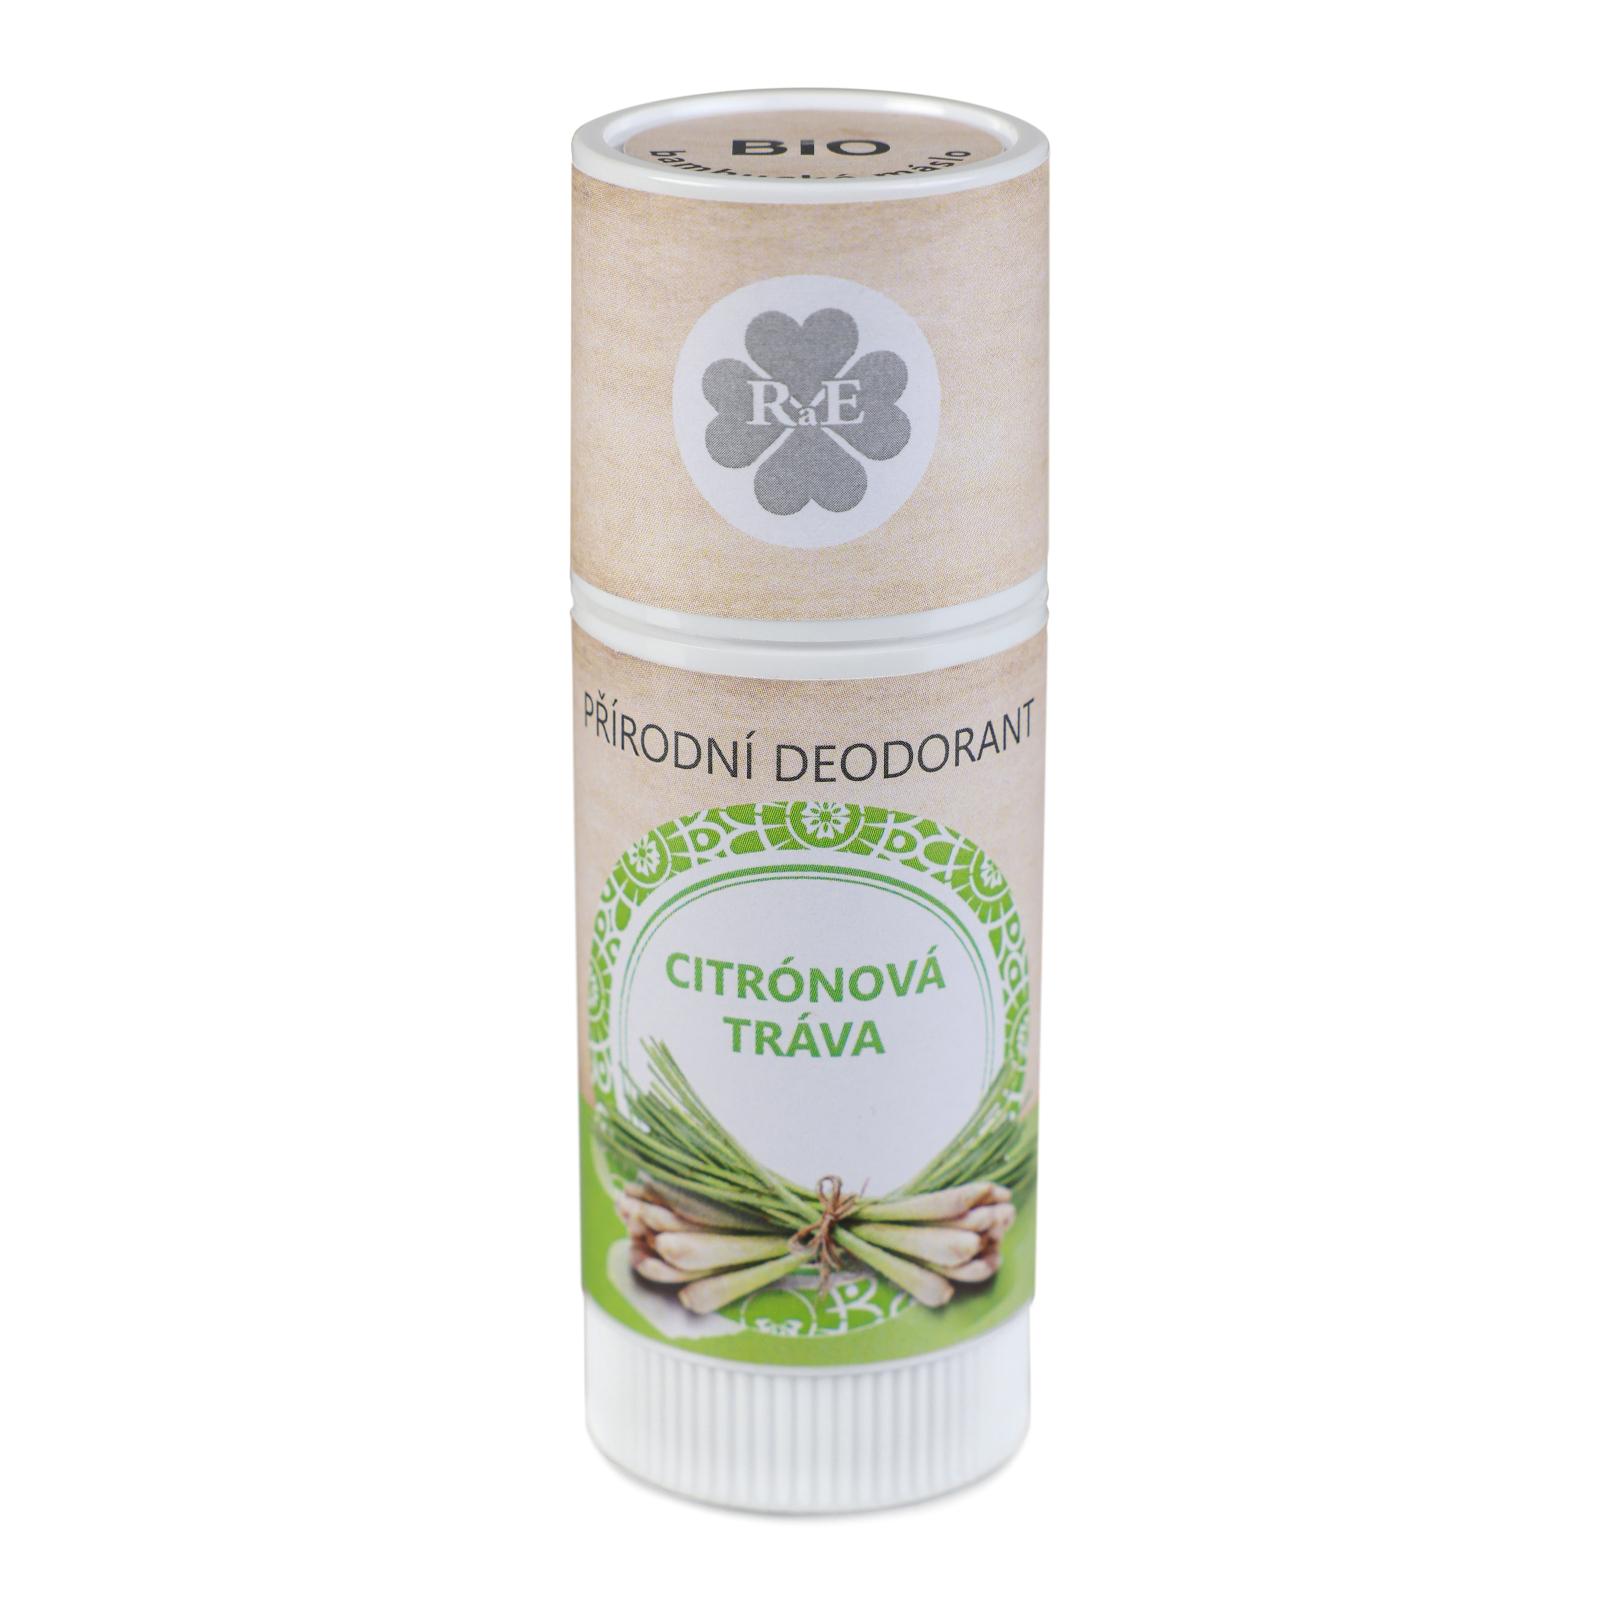 RaE Přírodní deodorant s vůní citrónové trávy 25 ml 